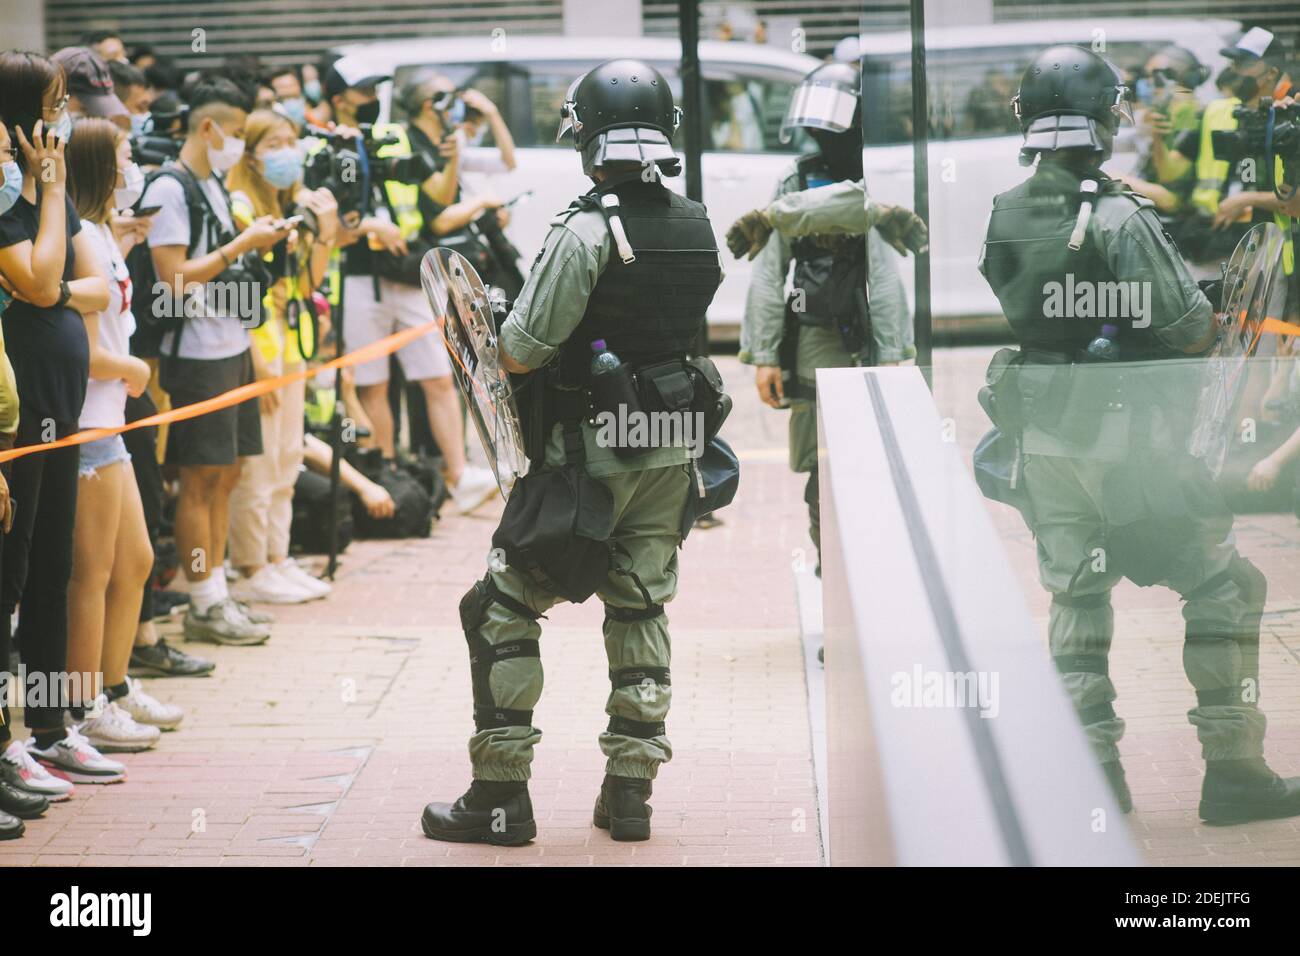 Hong Kong, 27 de mayo de 2020, los manifestantes son detenidos por la policía como una Asamblea ilegal en Causeway Bay. Las personas están usando la máscara como control de prevención Covid 19. Foto de stock